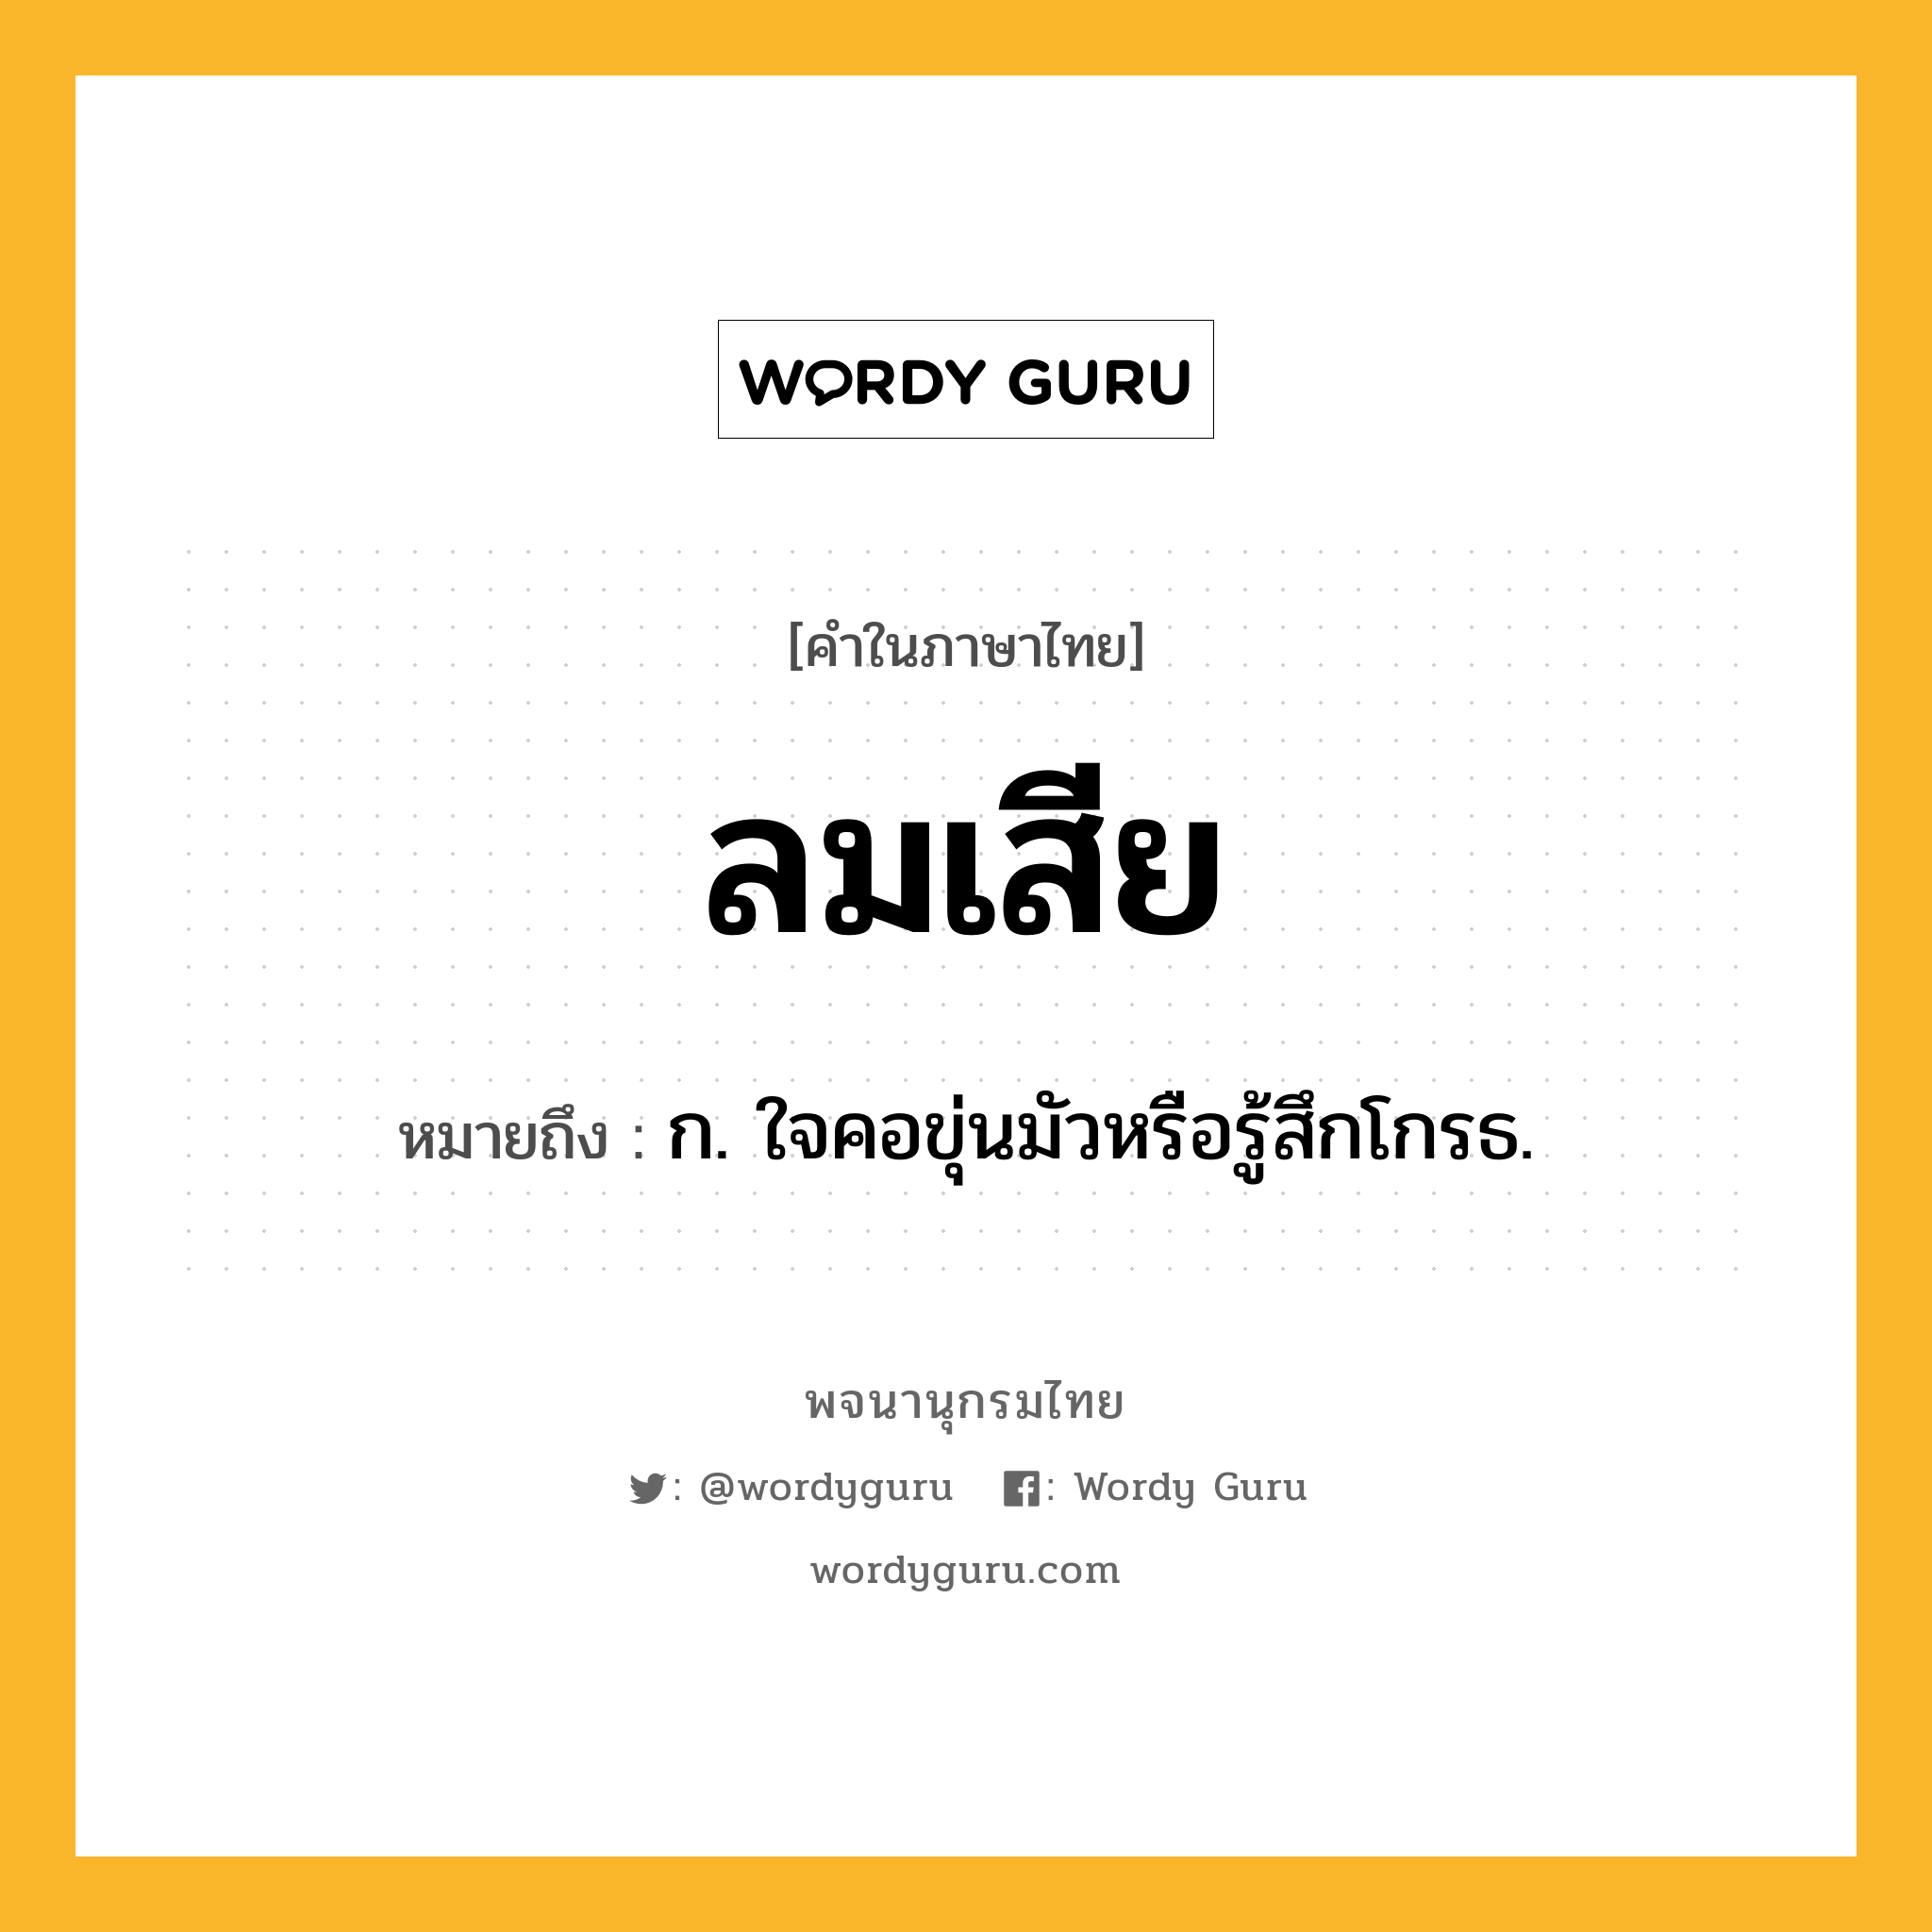 ลมเสีย หมายถึงอะไร?, คำในภาษาไทย ลมเสีย หมายถึง ก. ใจคอขุ่นมัวหรือรู้สึกโกรธ.